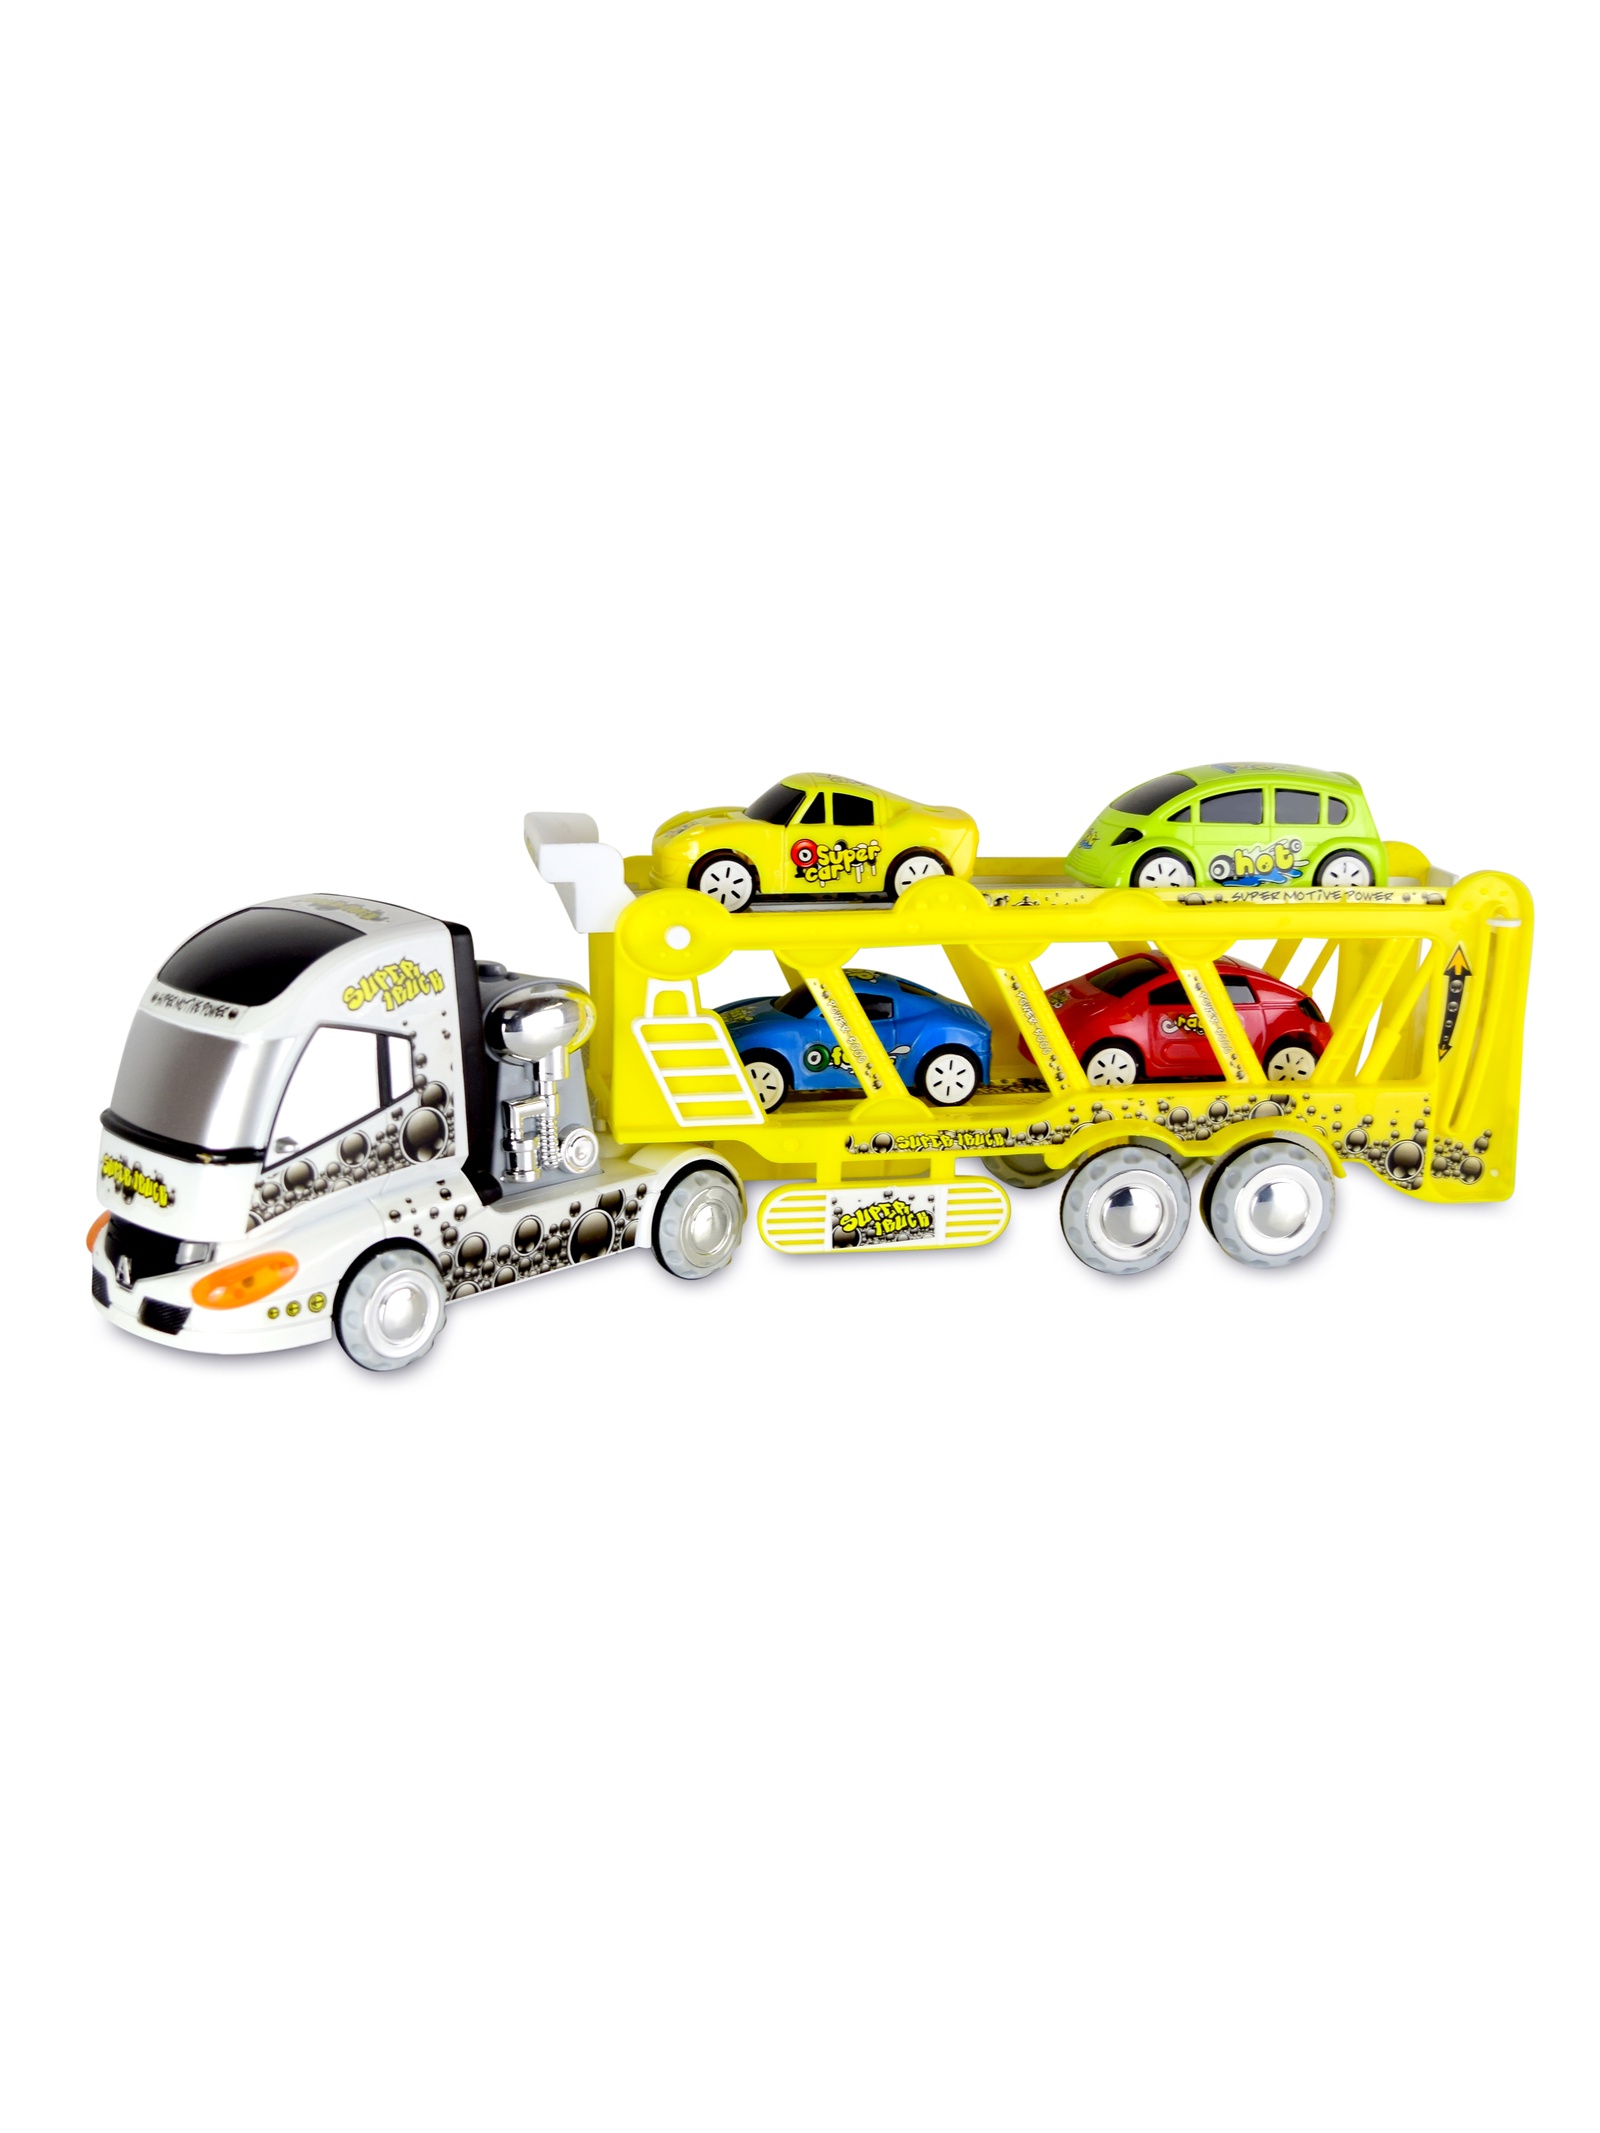 Трейлер с машинами JT Toys, 3315, желтый